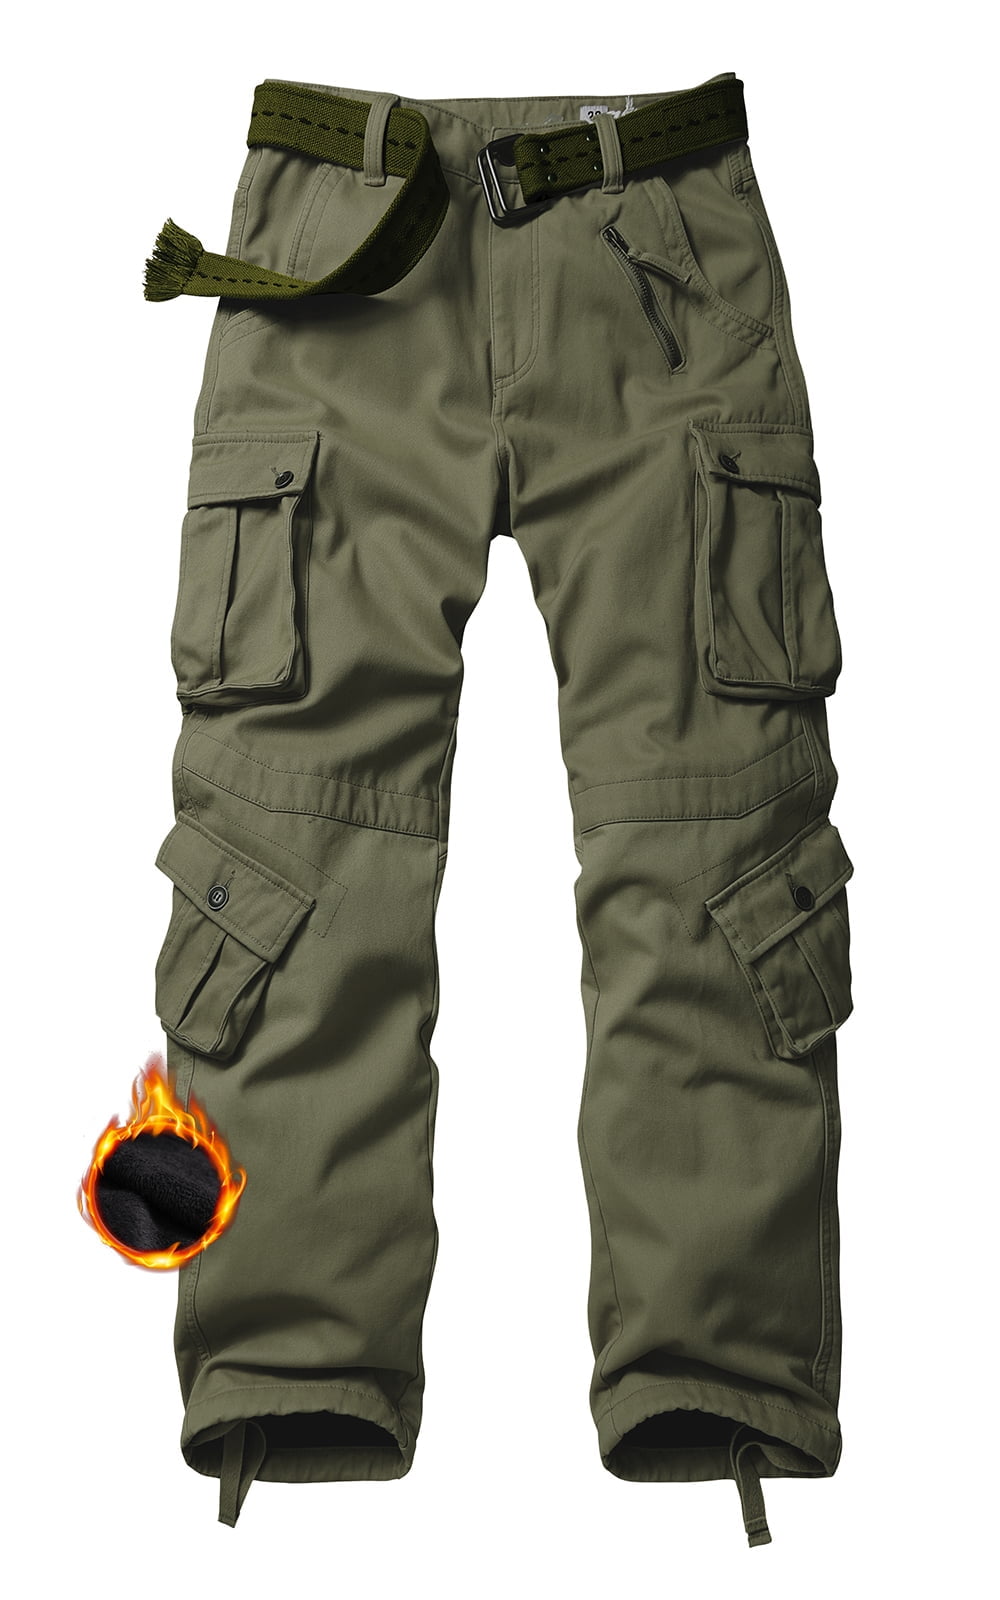 TRGPSG Men's Fleece Lined Hiking Pants Outdoor Cargo Pants Casual Work ...